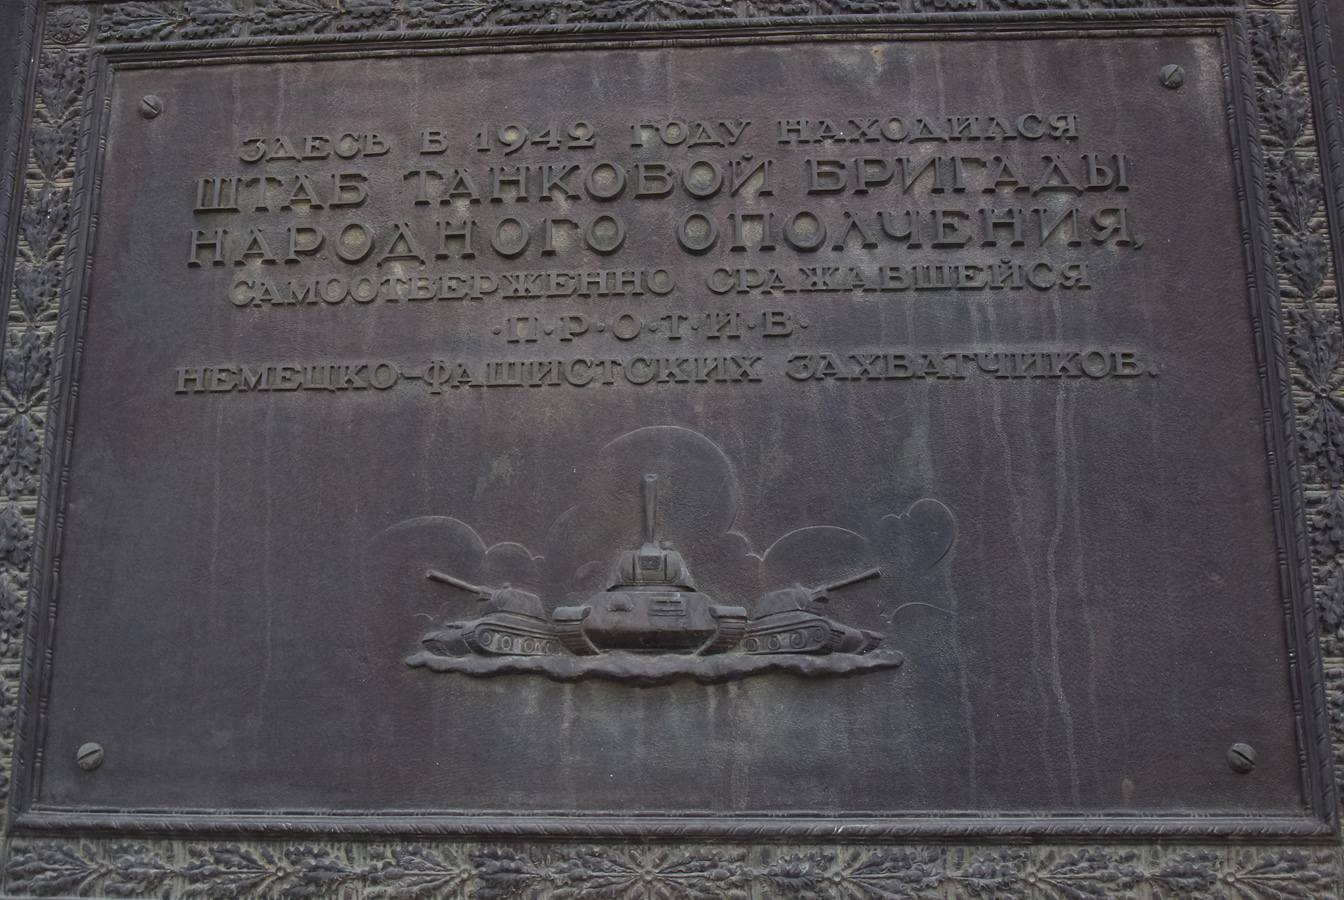 Wolgograd, Проспект имени Ленина, 215. Wolgograd — Memorial plaques